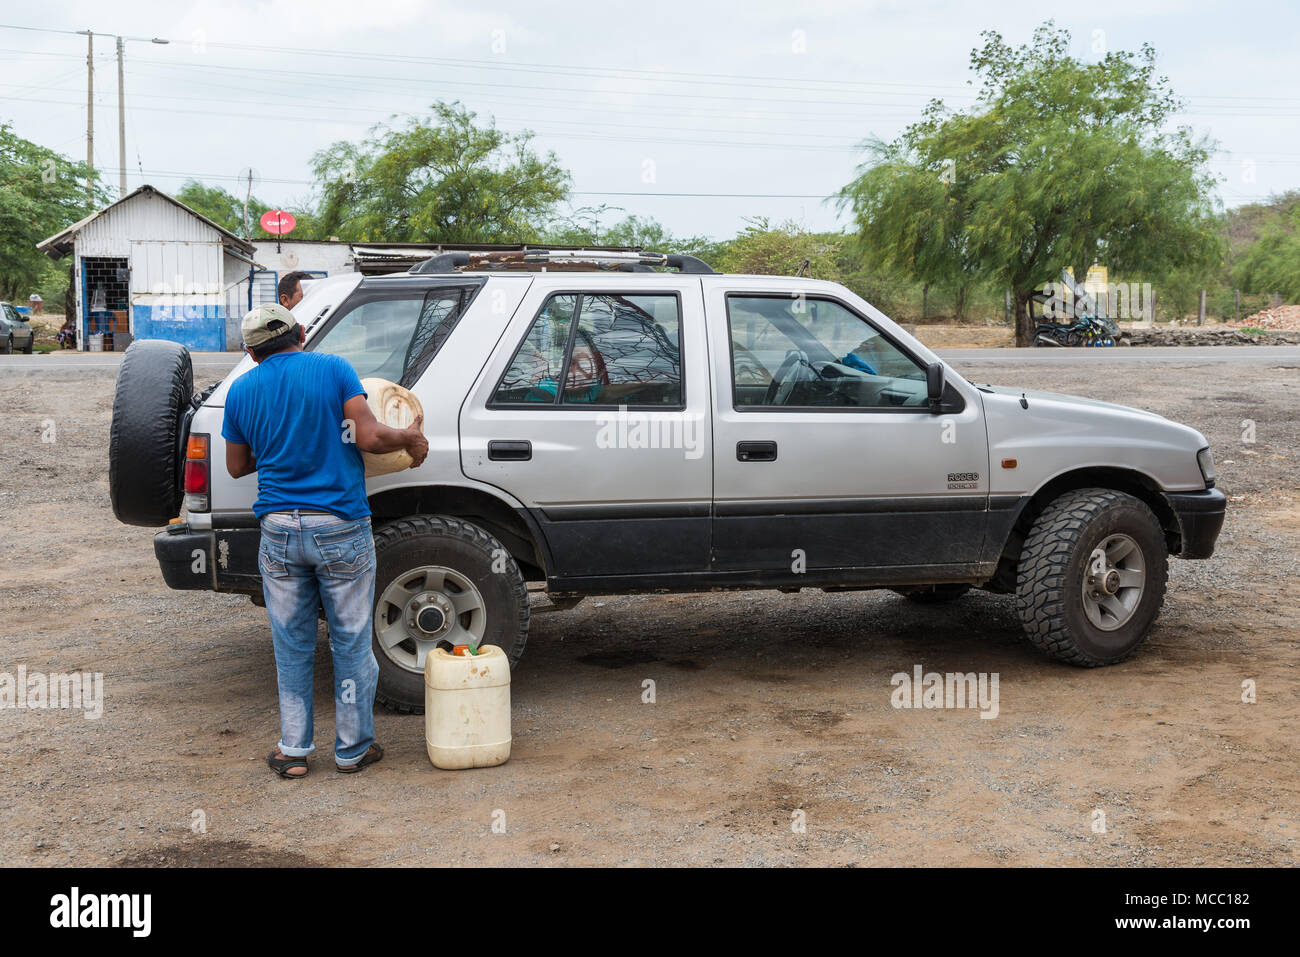 Un uomo si riempie la benzina per una macchina in corrispondenza di una zona rurale petro station. La Colombia, Sud America. Foto Stock